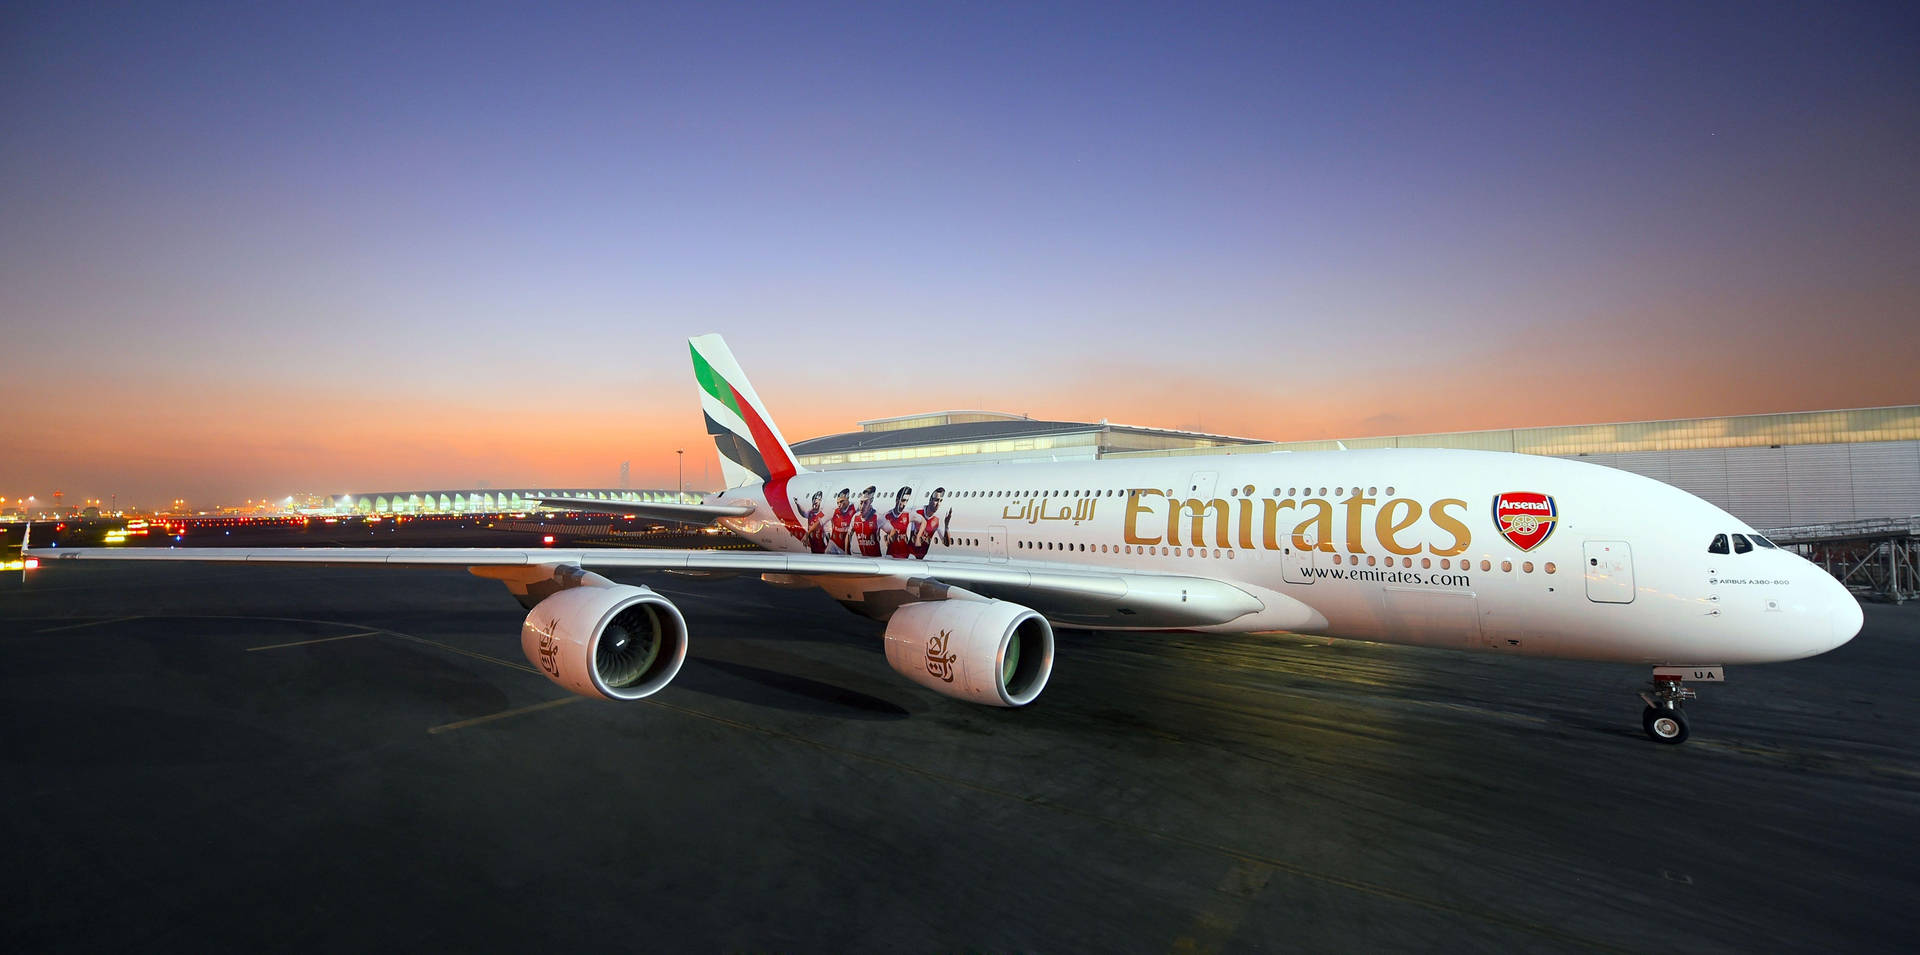 Modelode Avião Emirates Arsenal. Papel de Parede